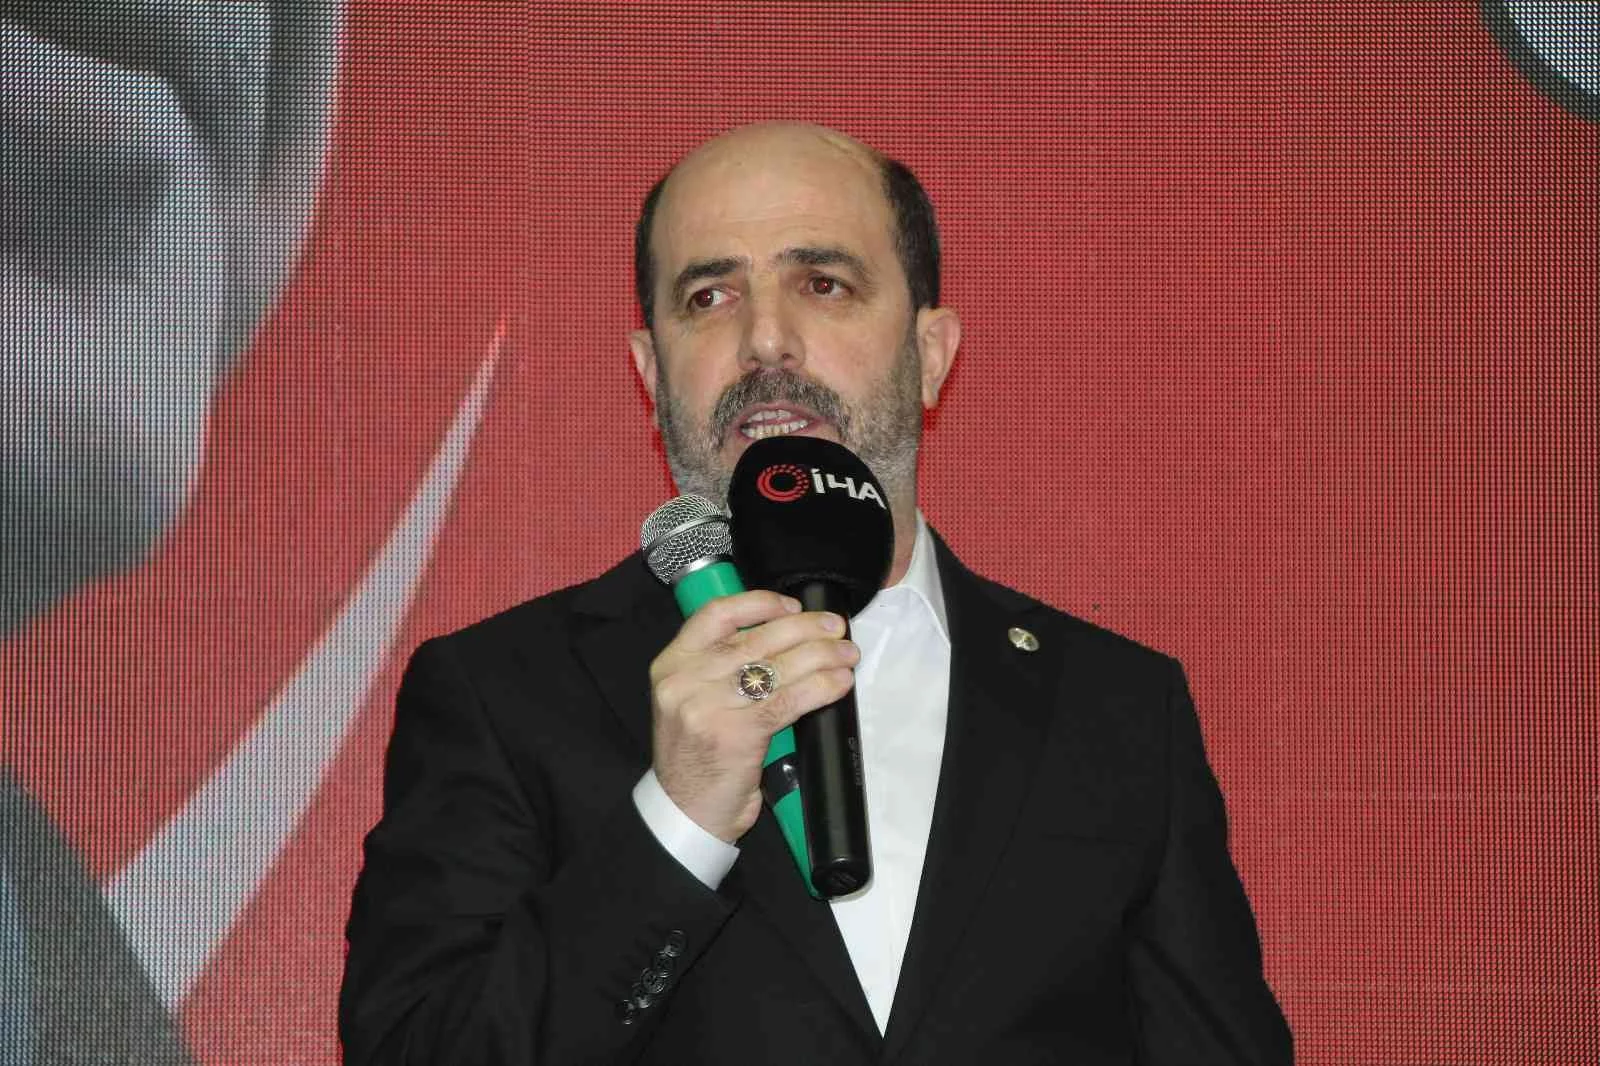 Şehit Aileleri Konfederasyonu Başkanı Sözen: “Türkiye düşmanlarına karşı Cumhurbaşkanımıza destek vereceğiz”